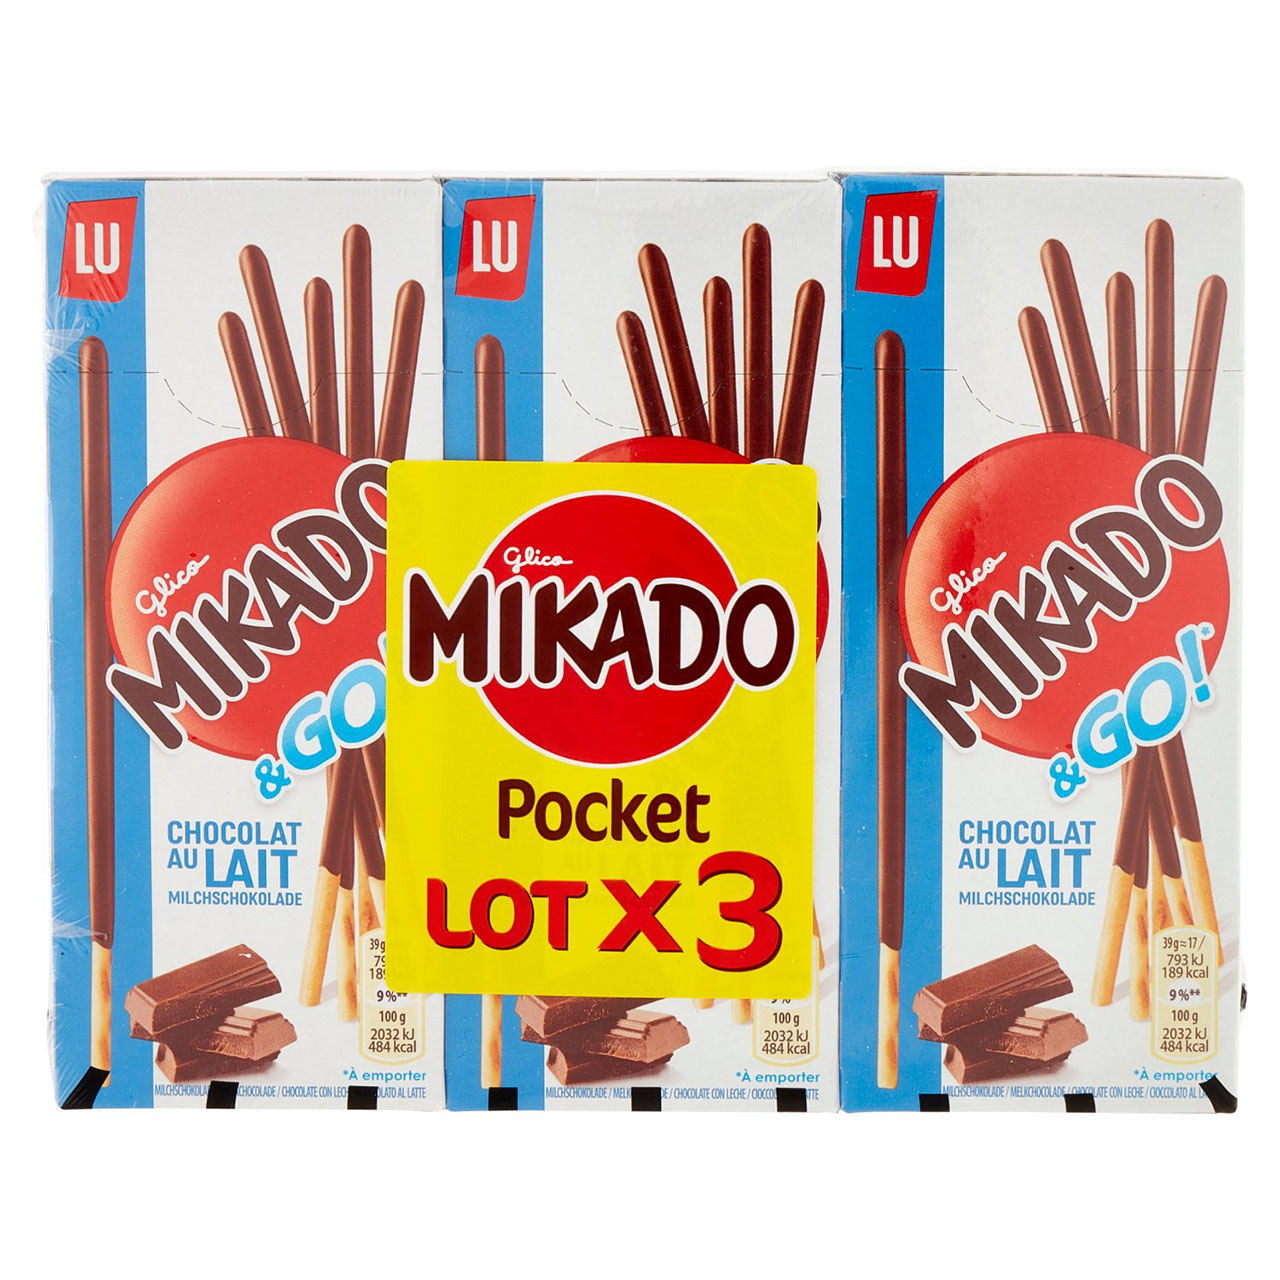 Mikado Chocolate, Mikado Pocket Milk Chocolate